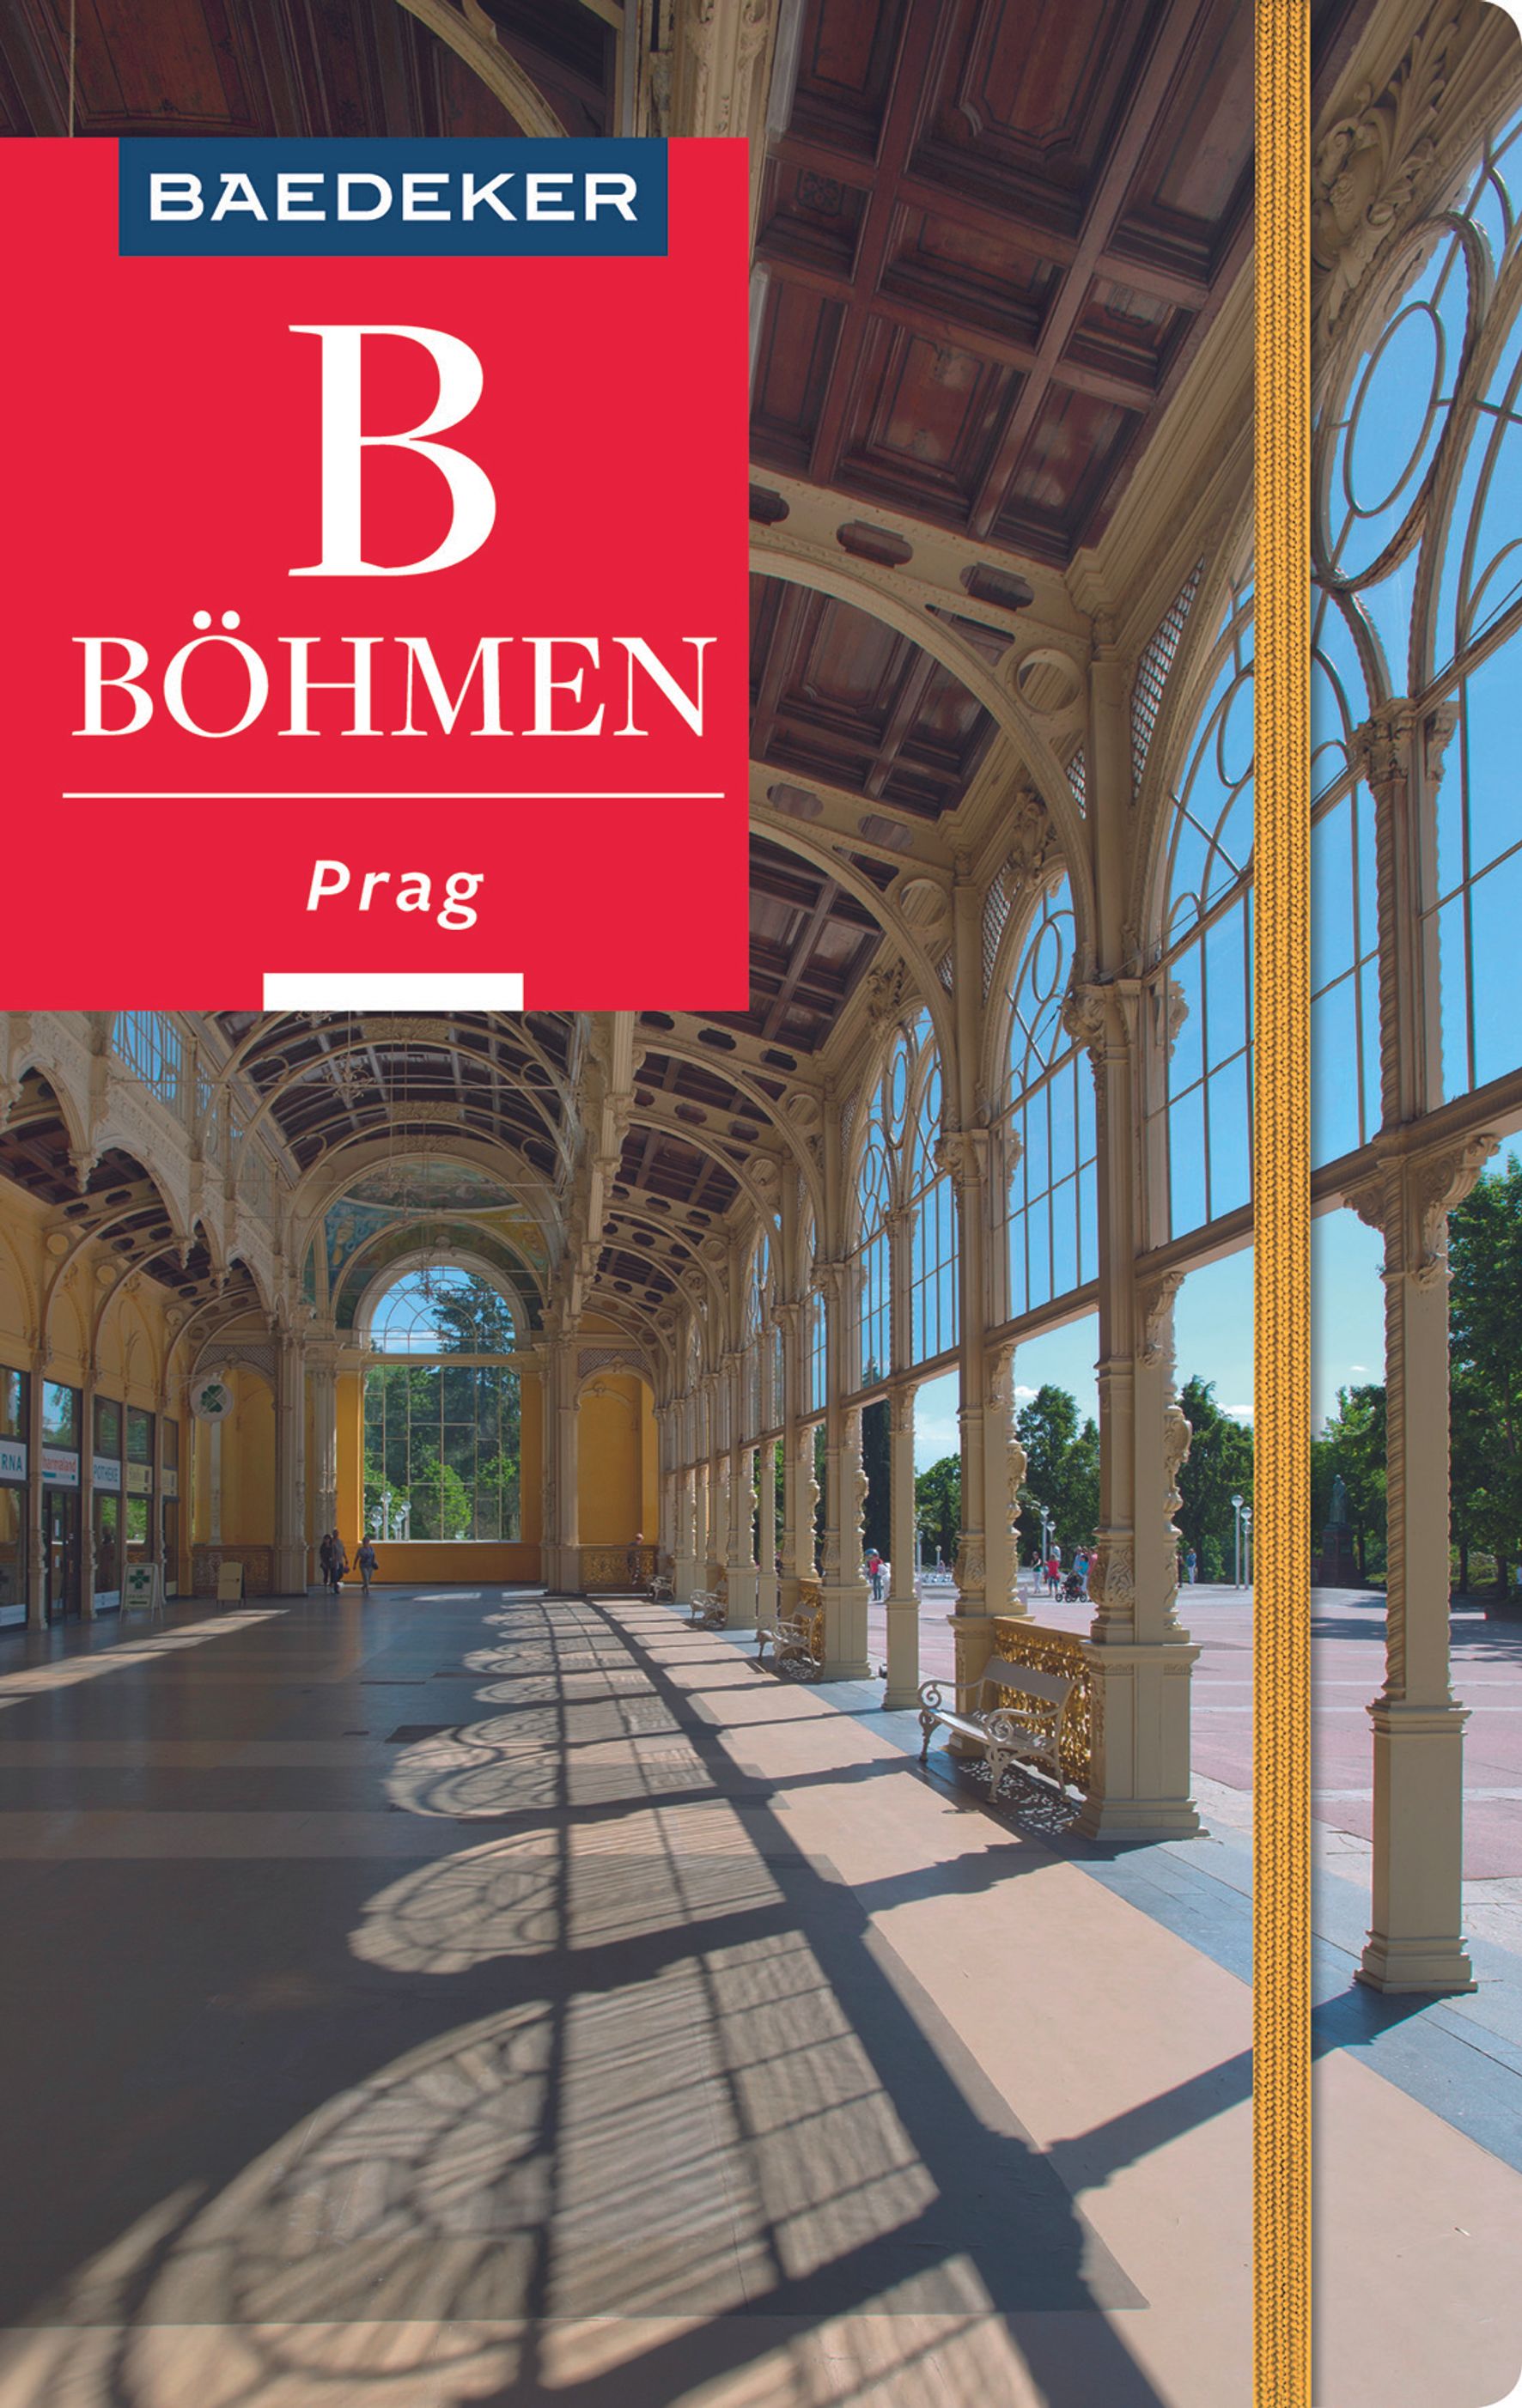 Baedeker Böhmen - Prag (eBook)